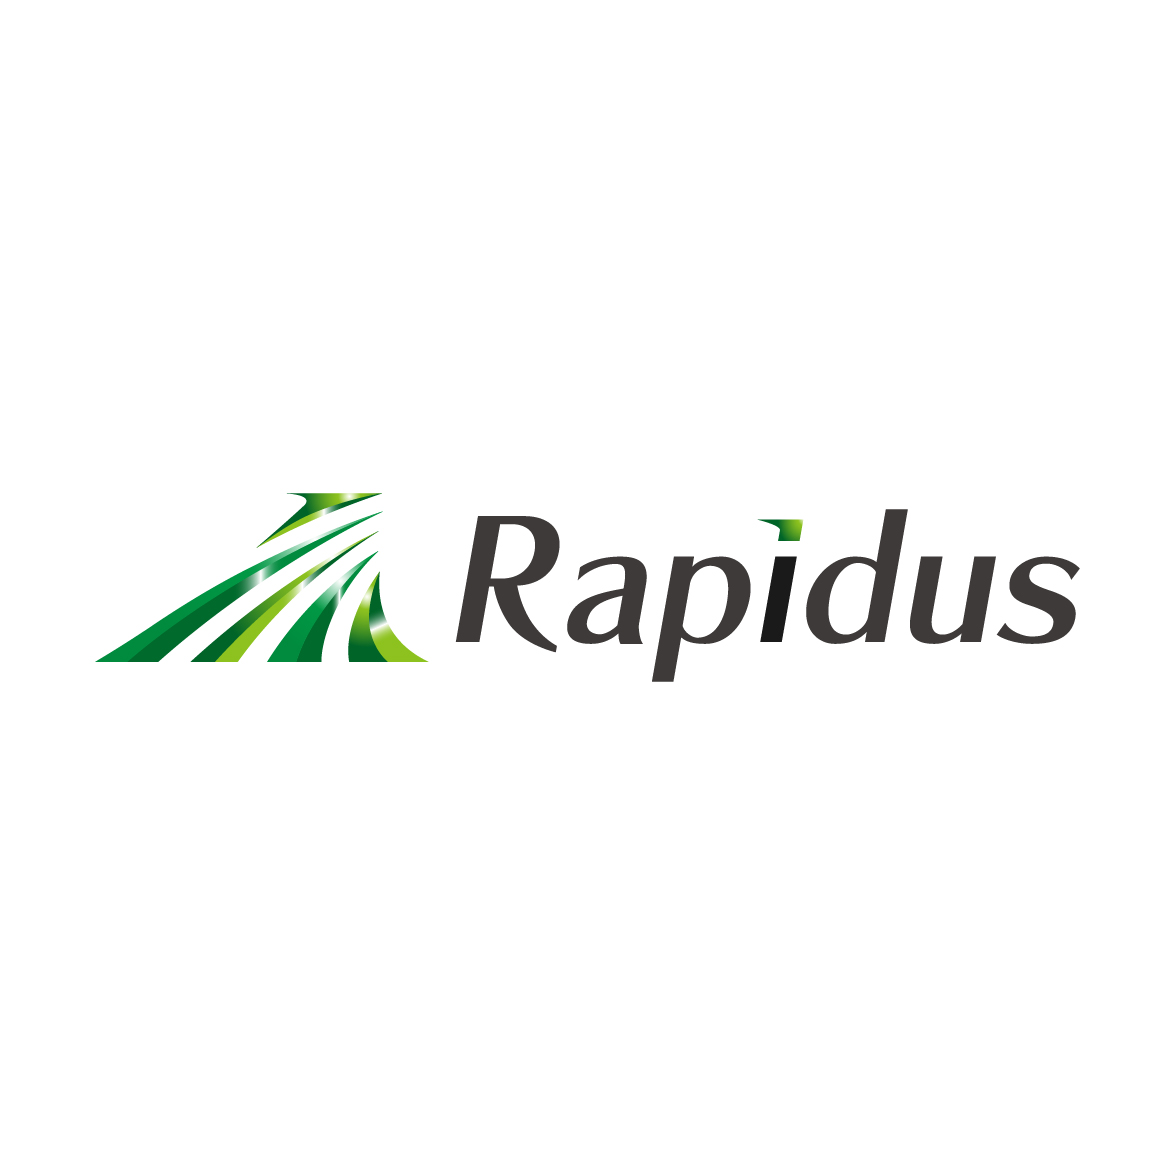 Rapidus株式会社